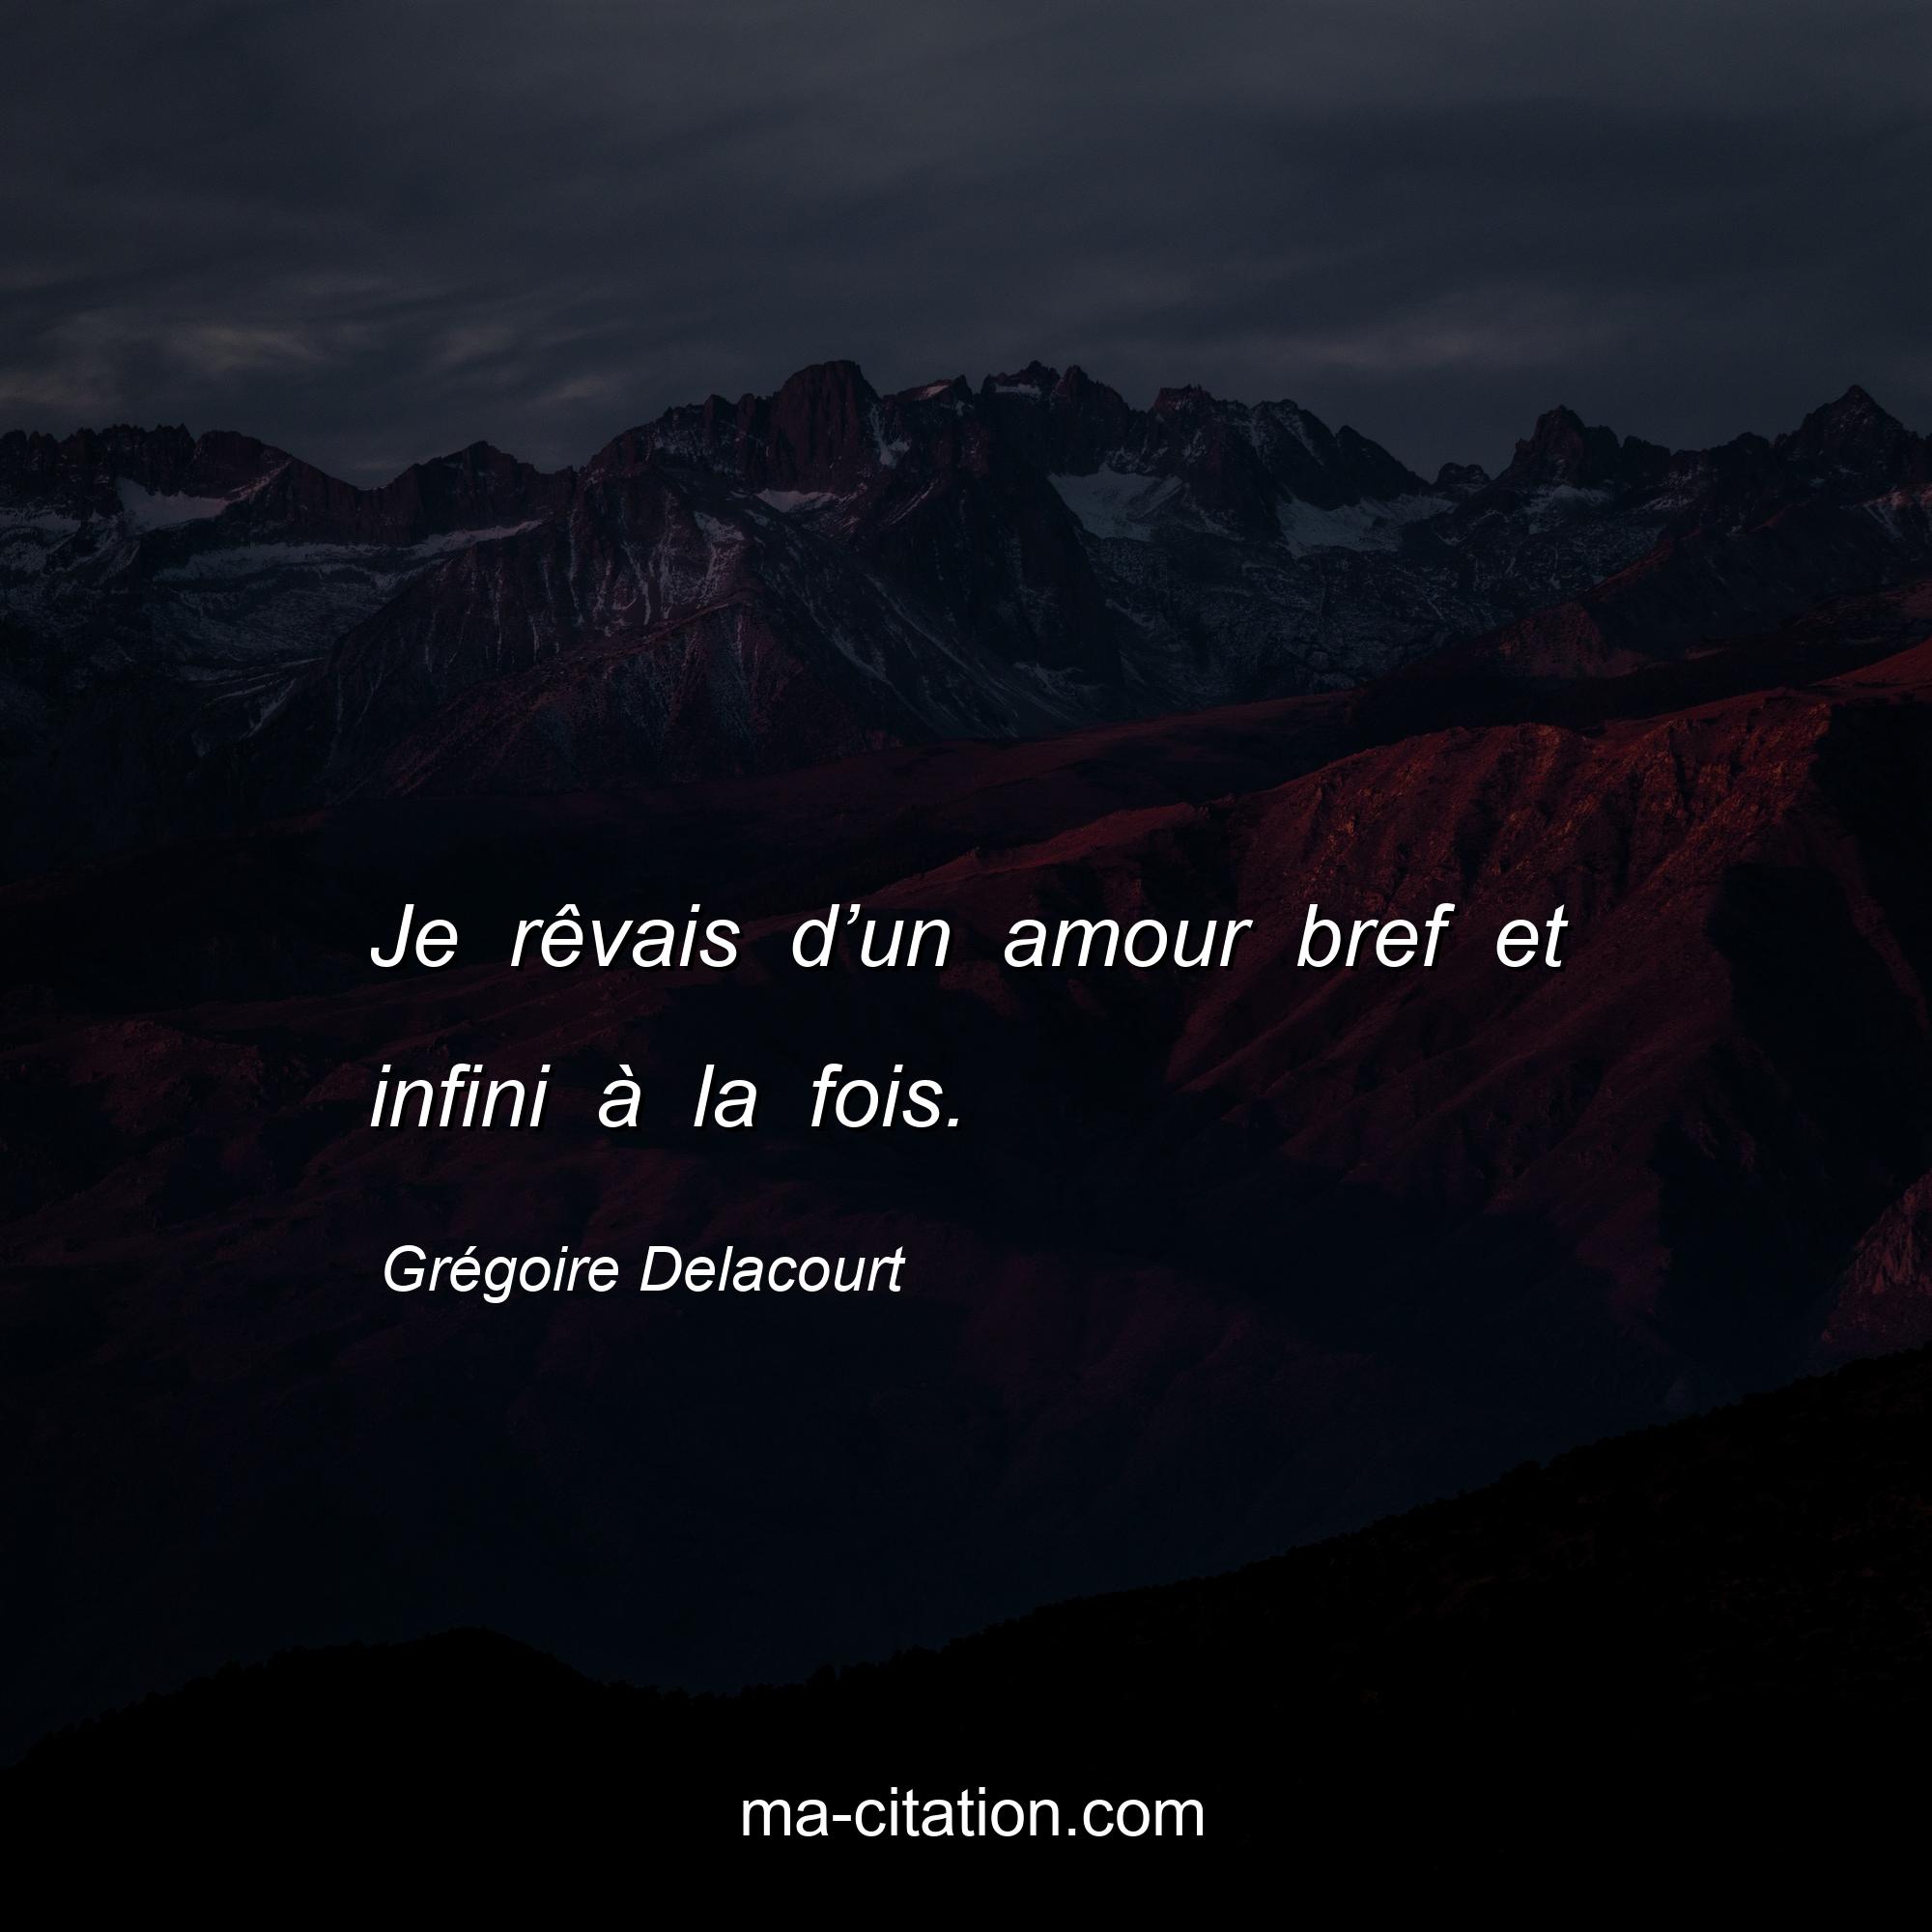 Grégoire Delacourt : Je rêvais d’un amour bref et infini à la fois.